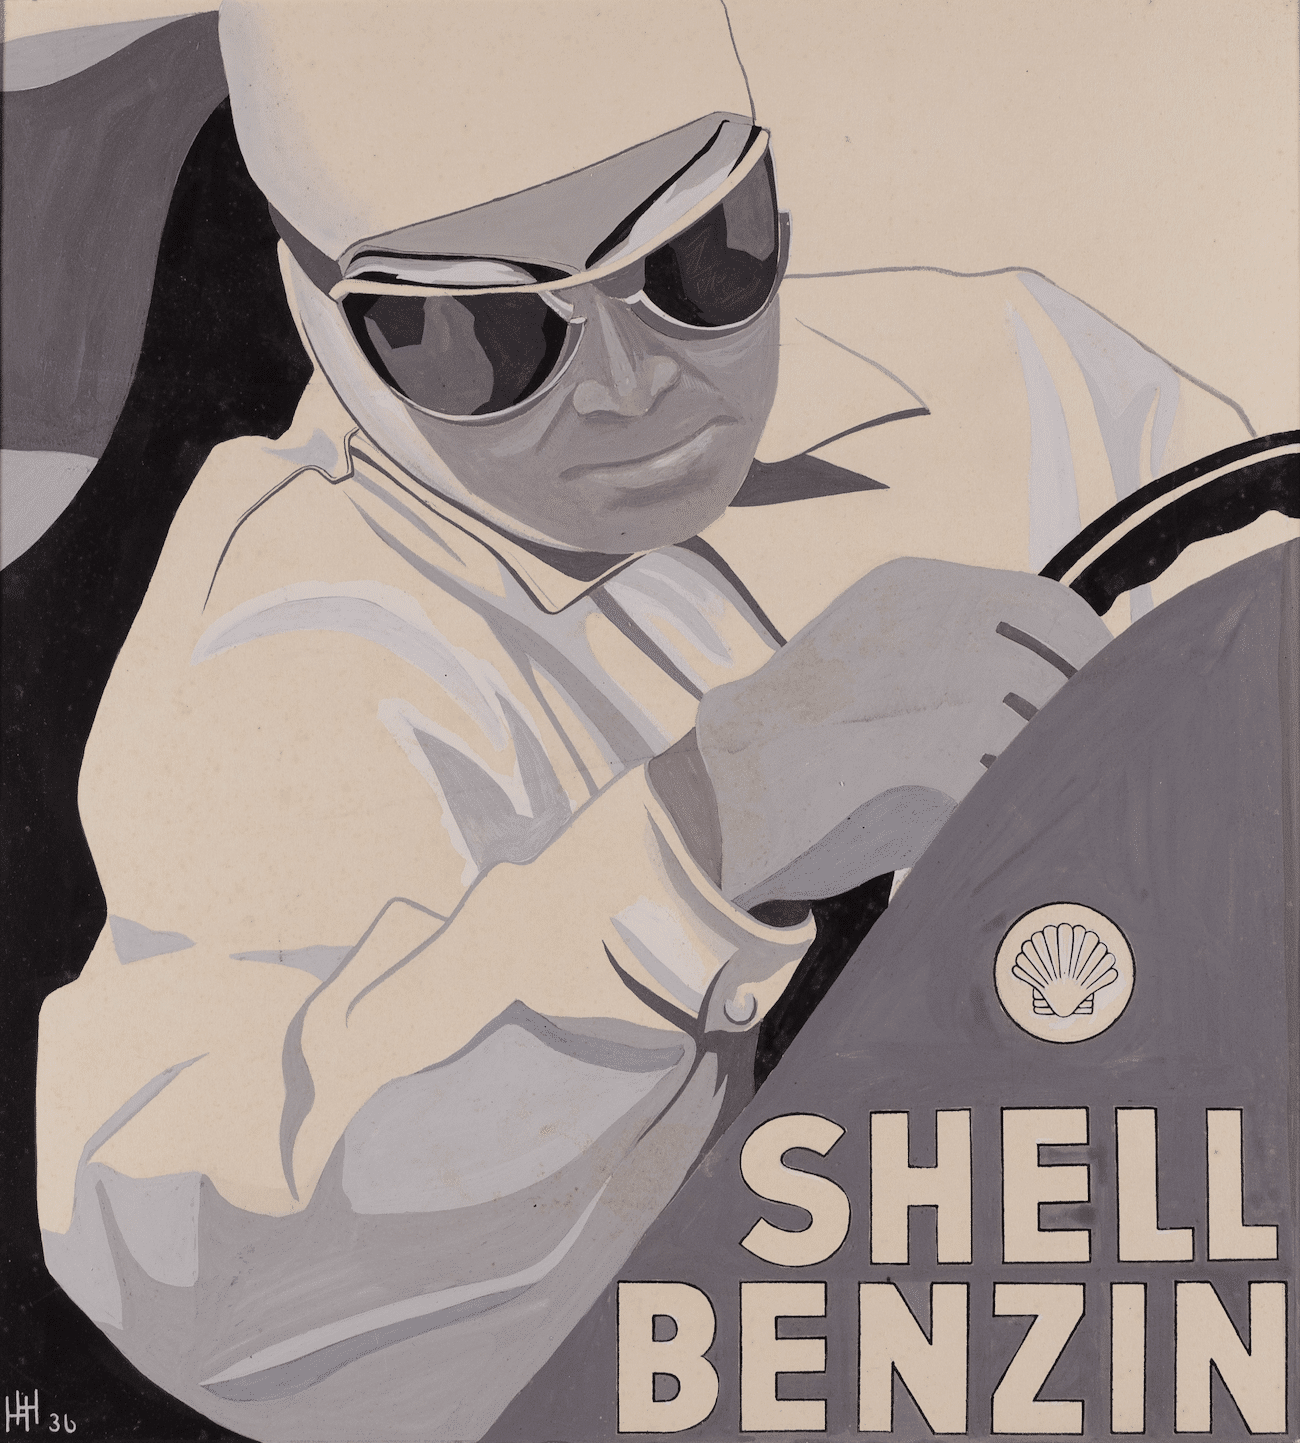 Shell-Benzin-Werbung, Plakatdesign von Hildi Schmidt Heins